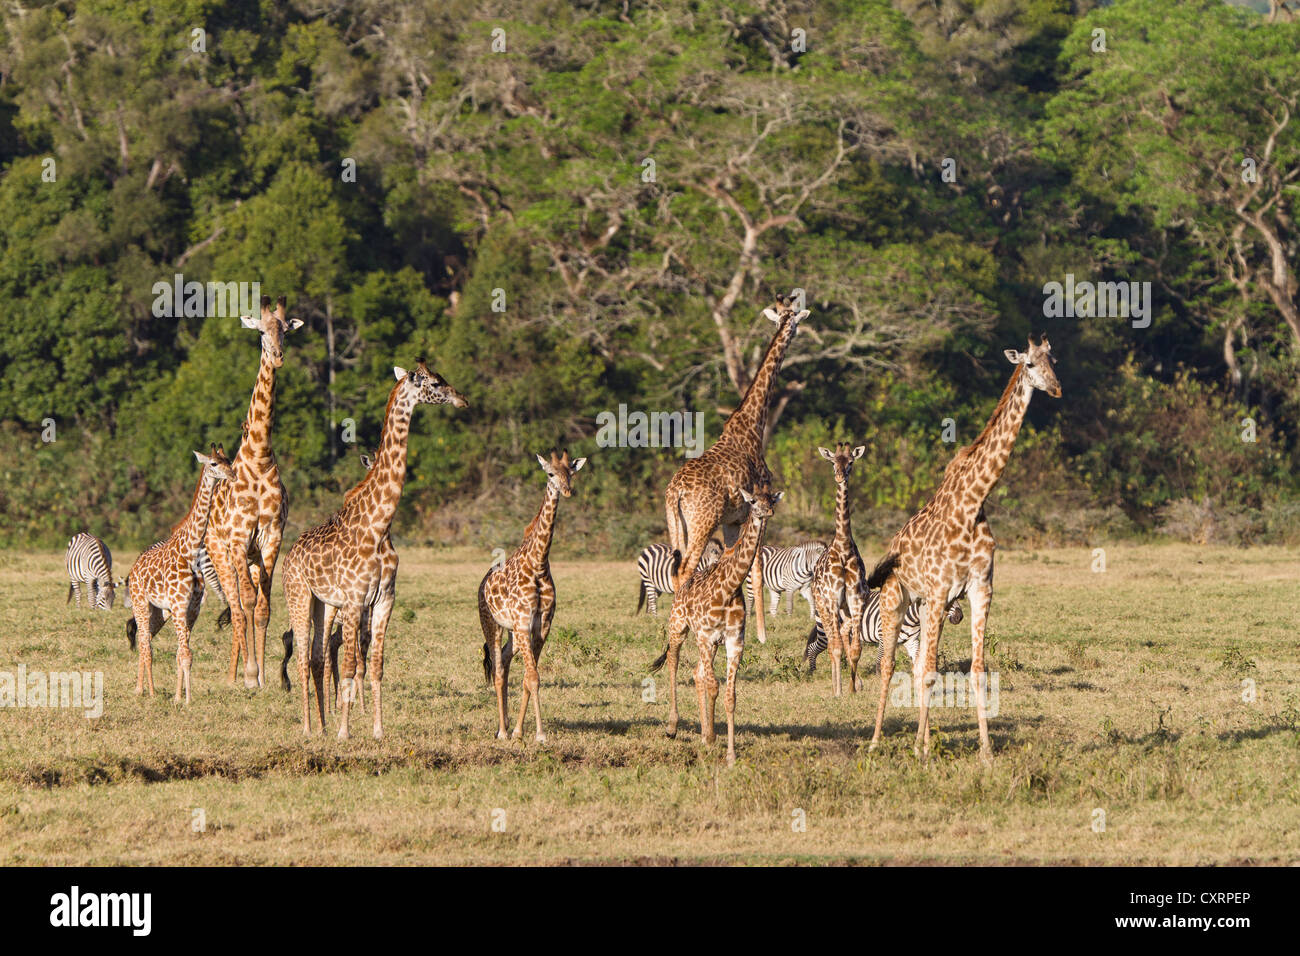 Massai, Maasai, Masai Giraffes or Kilimanjaro Giraffes (Giraffa camelopardalis tippelskirchi), Arusha National Park, Tanzania Stock Photo